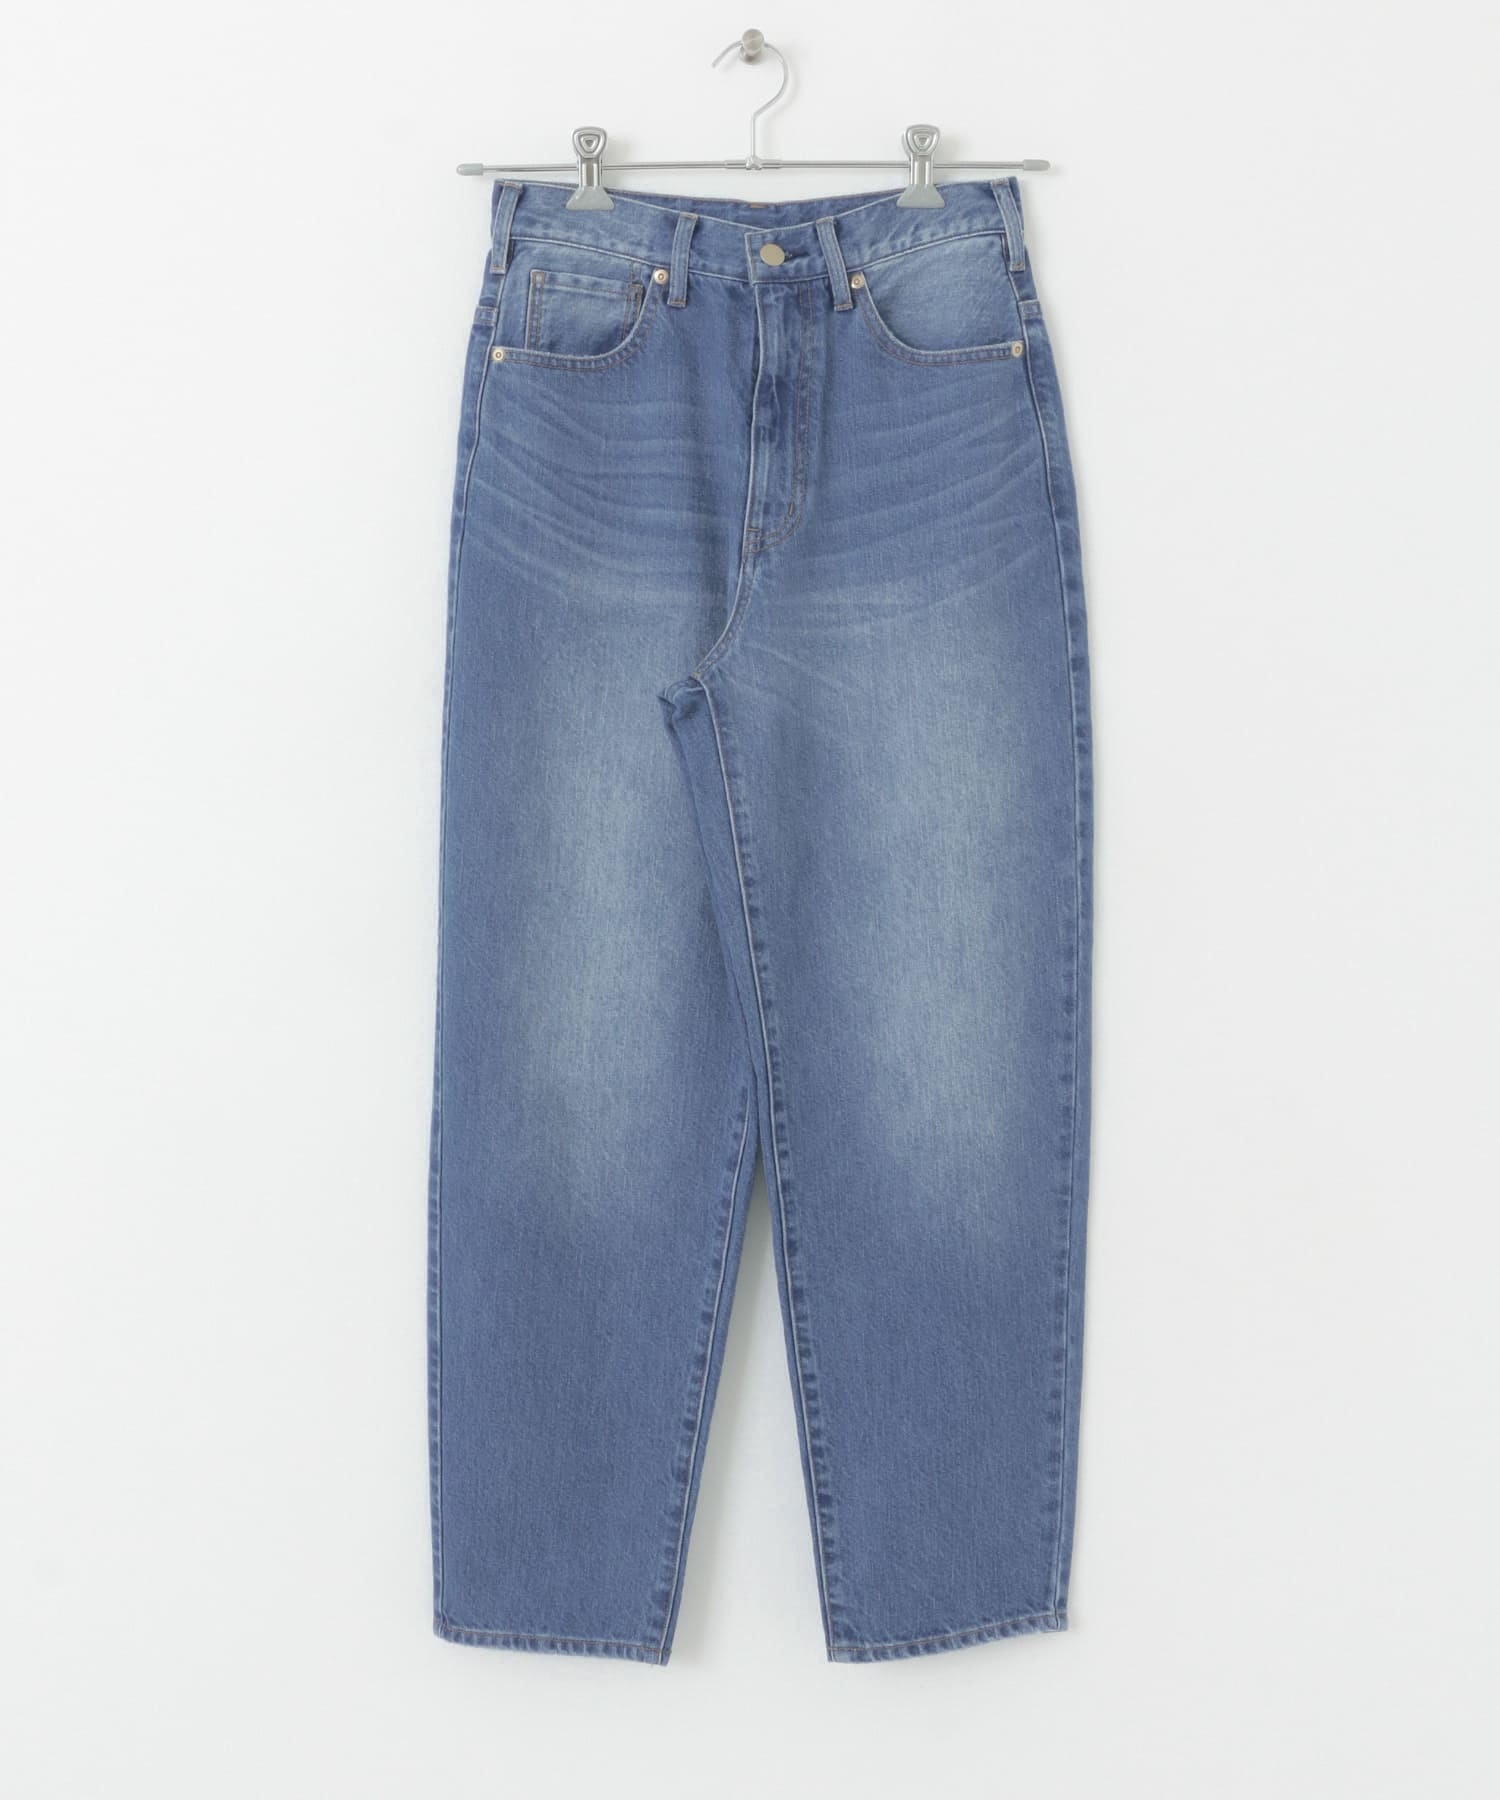 錐形牛仔褲(藍色-36-BLUE)